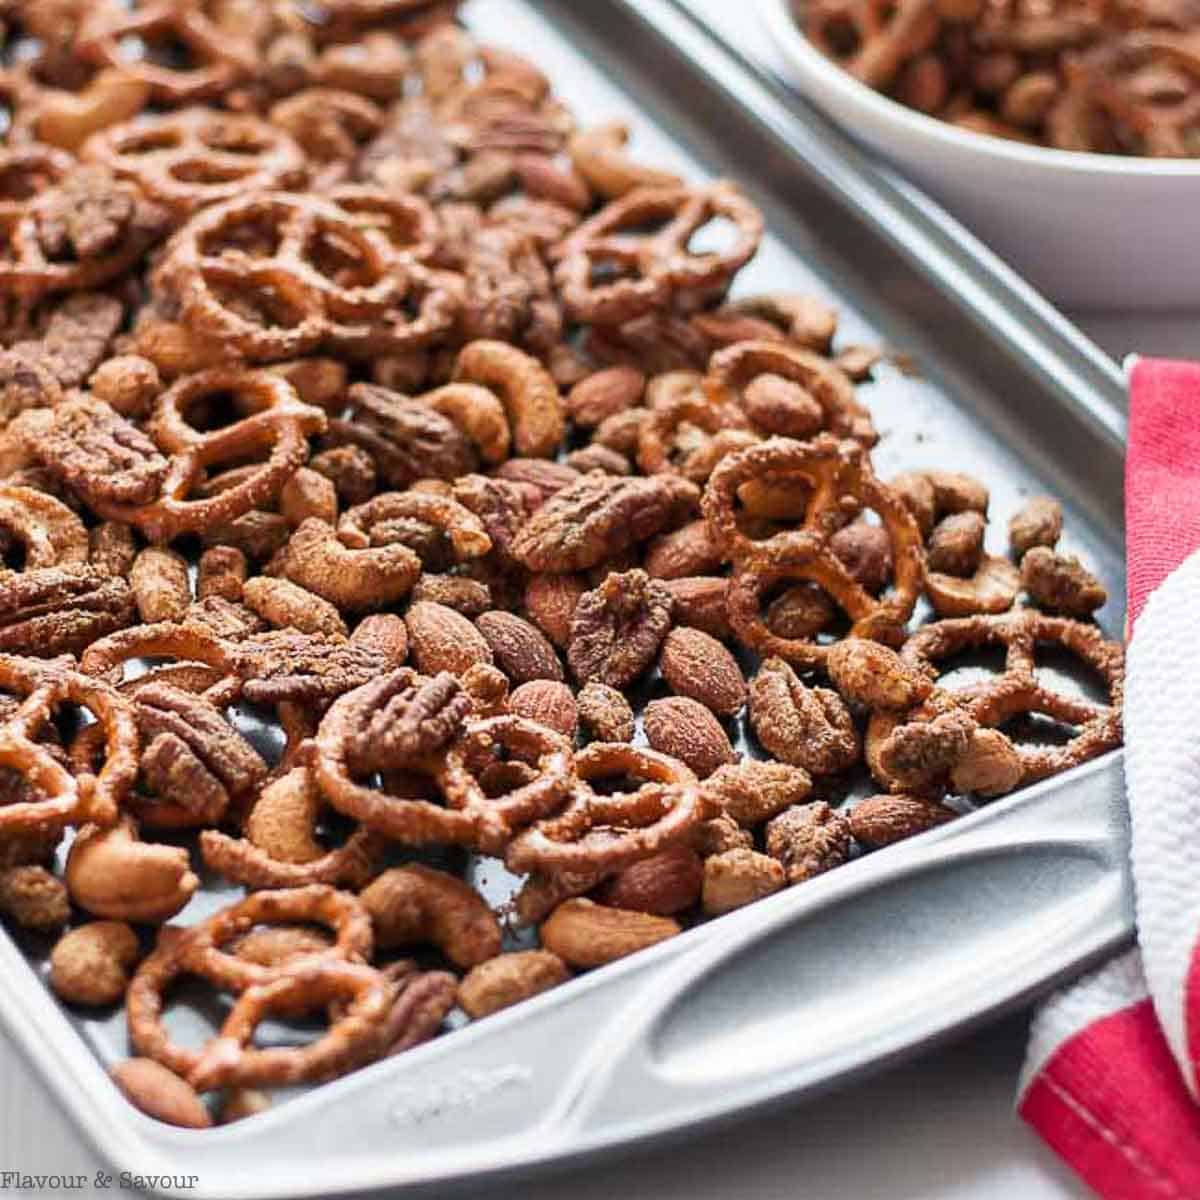 pretzel snack recipes